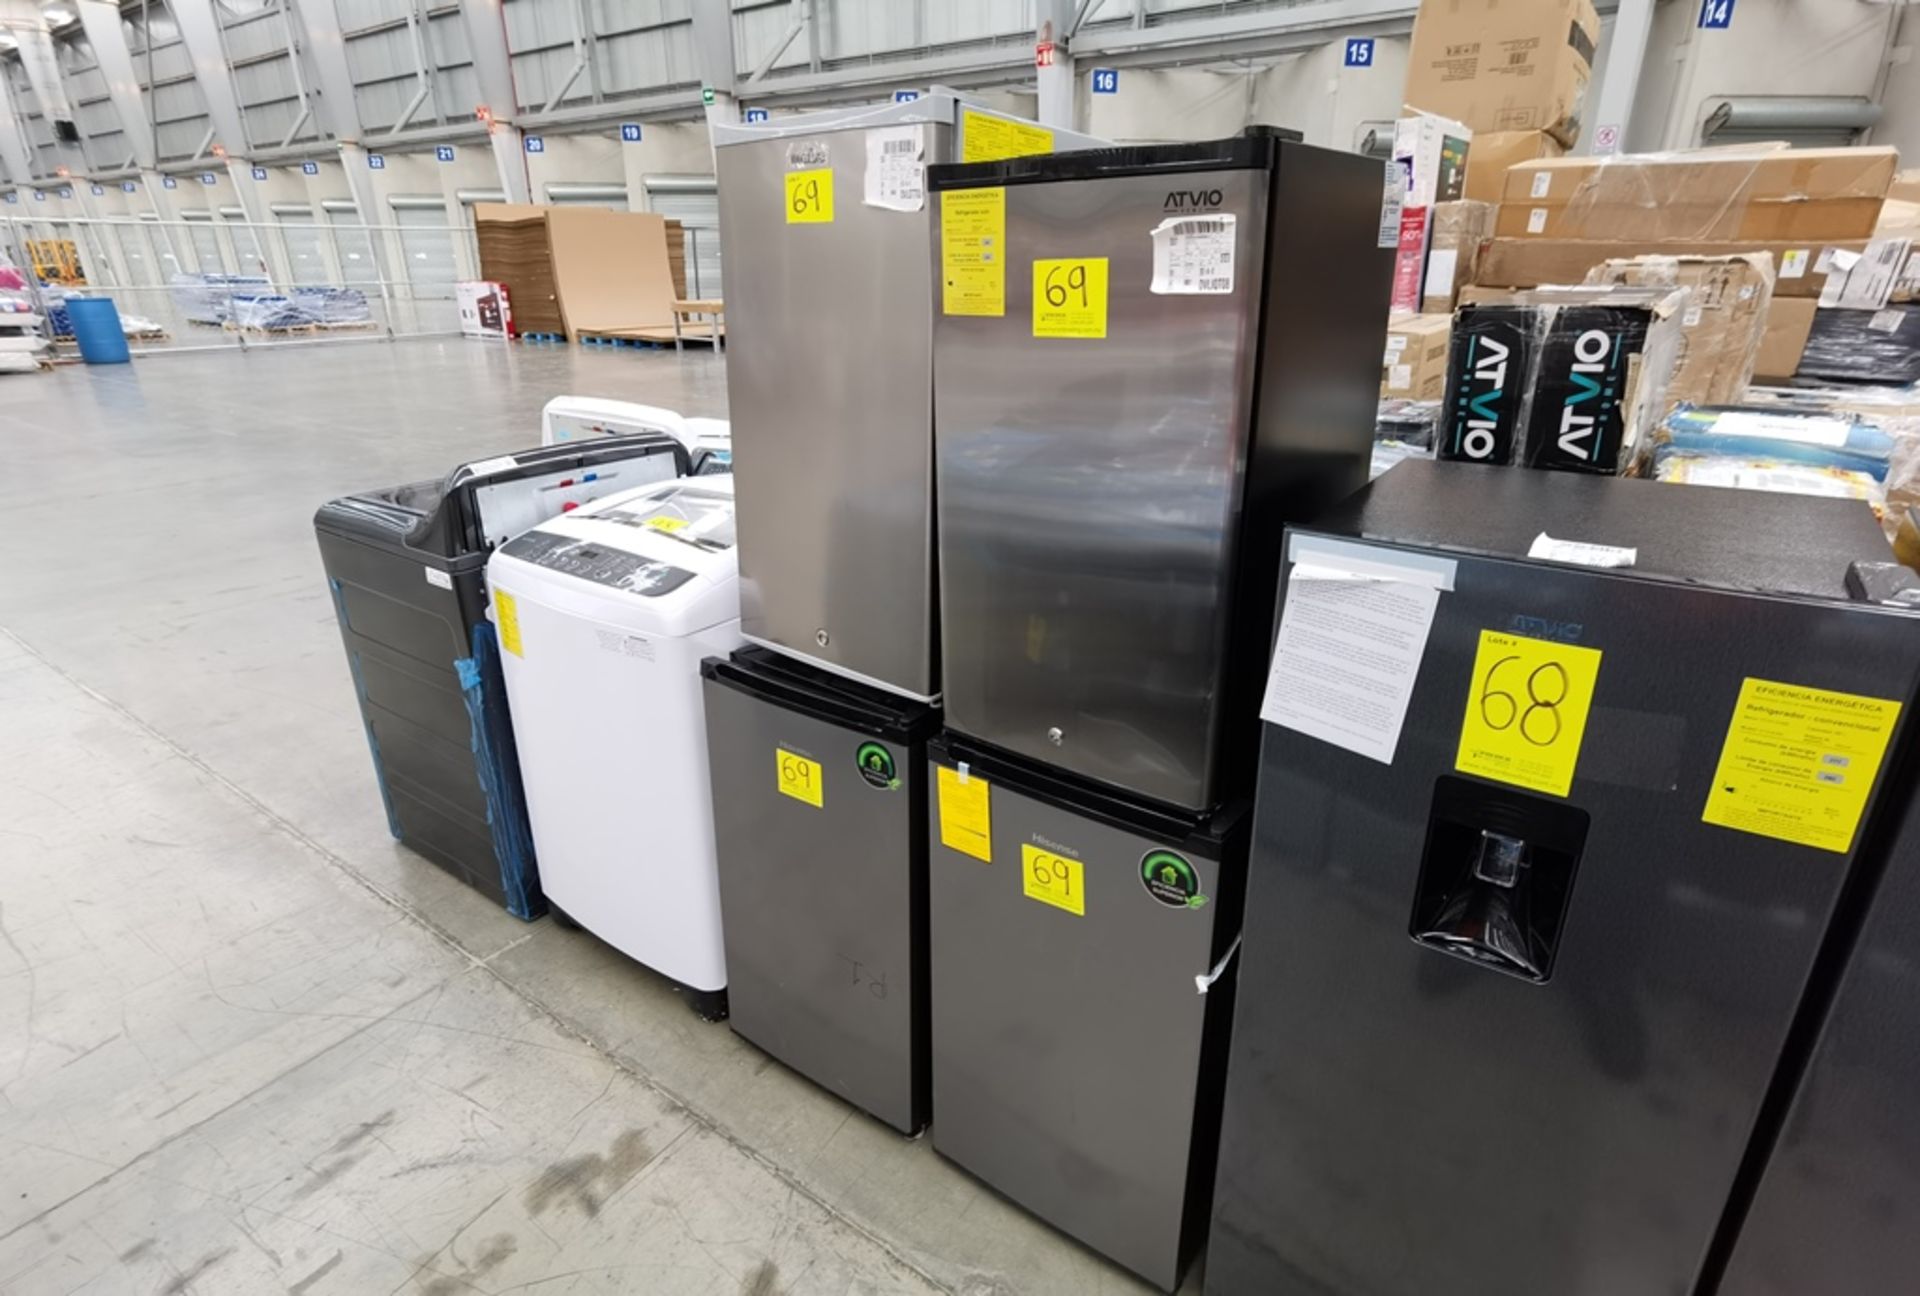 Lote De 4 Refrigeradores Contiene: 1 Refrigerador Marca Atvio, Modelo BC90SU, Serie N/D, Color Gris - Image 5 of 11